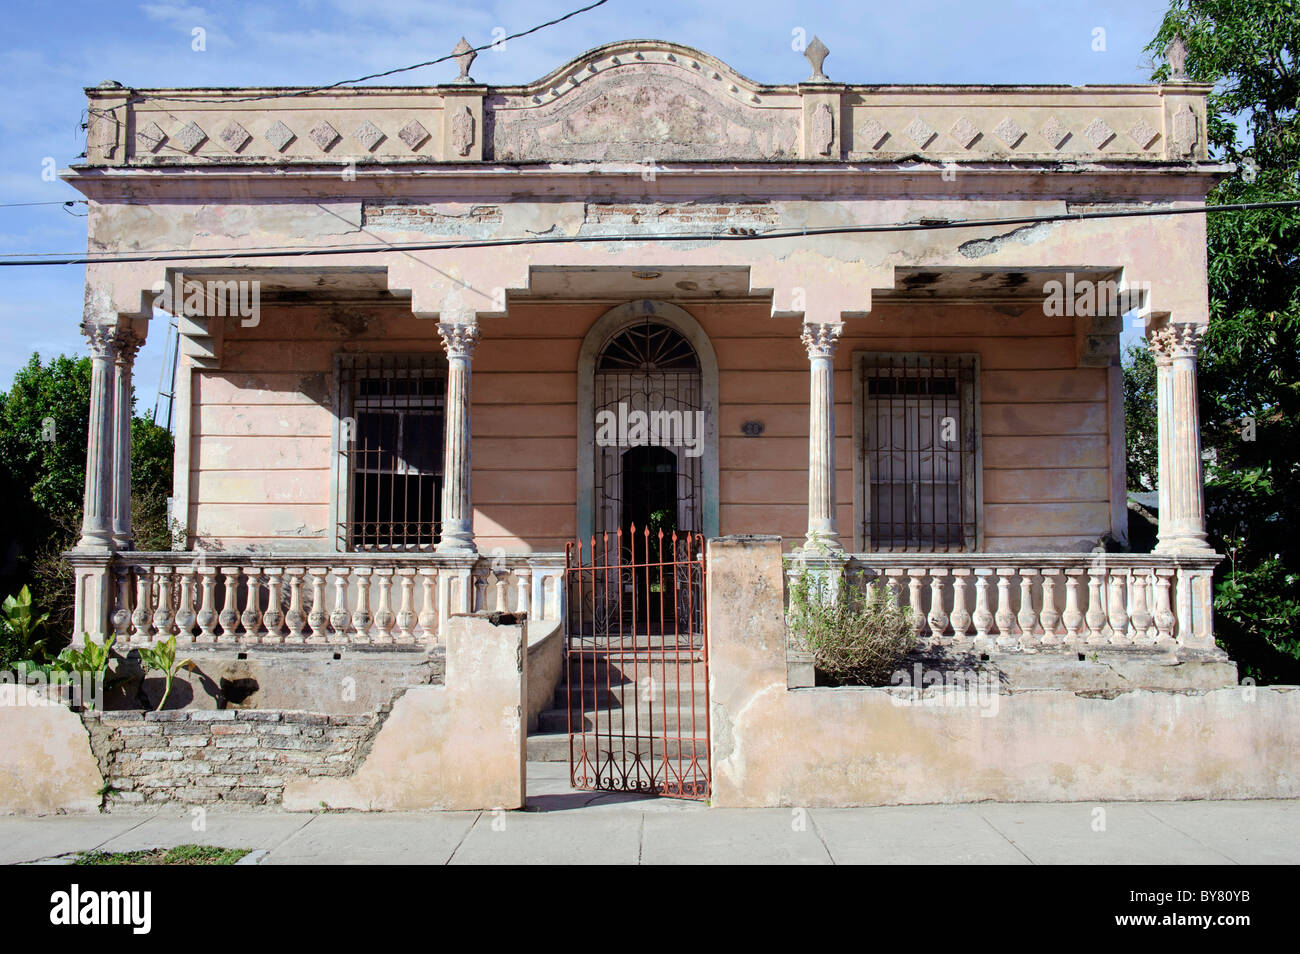 Vieille maison rose de style colonial Holguin Cuba. Banque D'Images